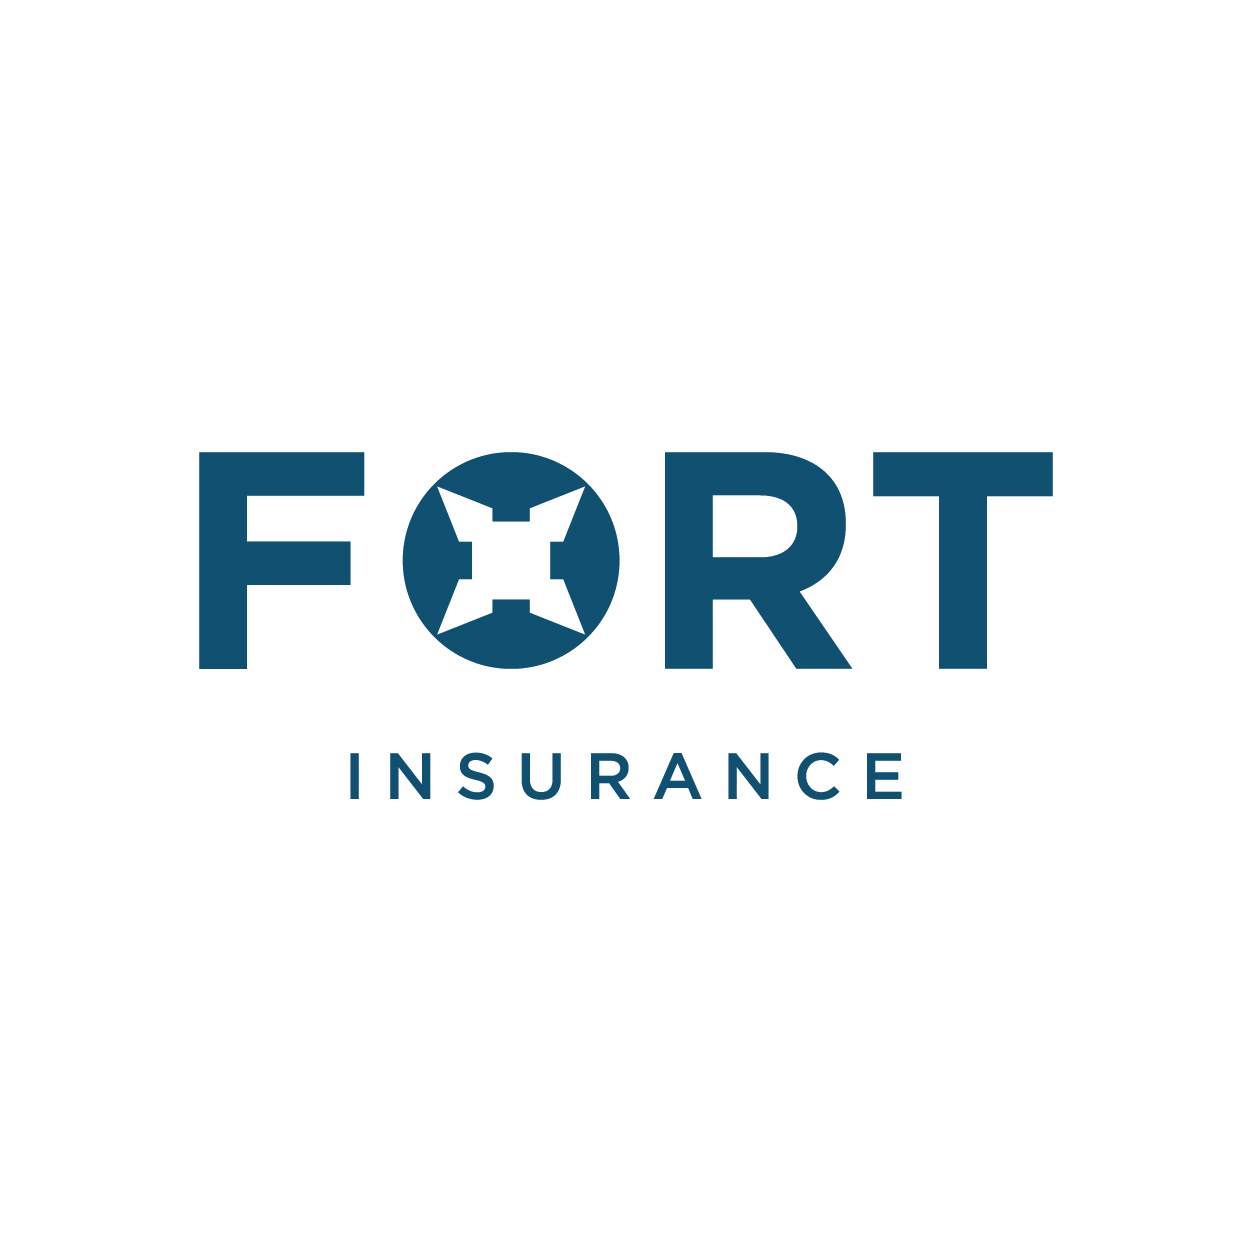 Fort Insurance